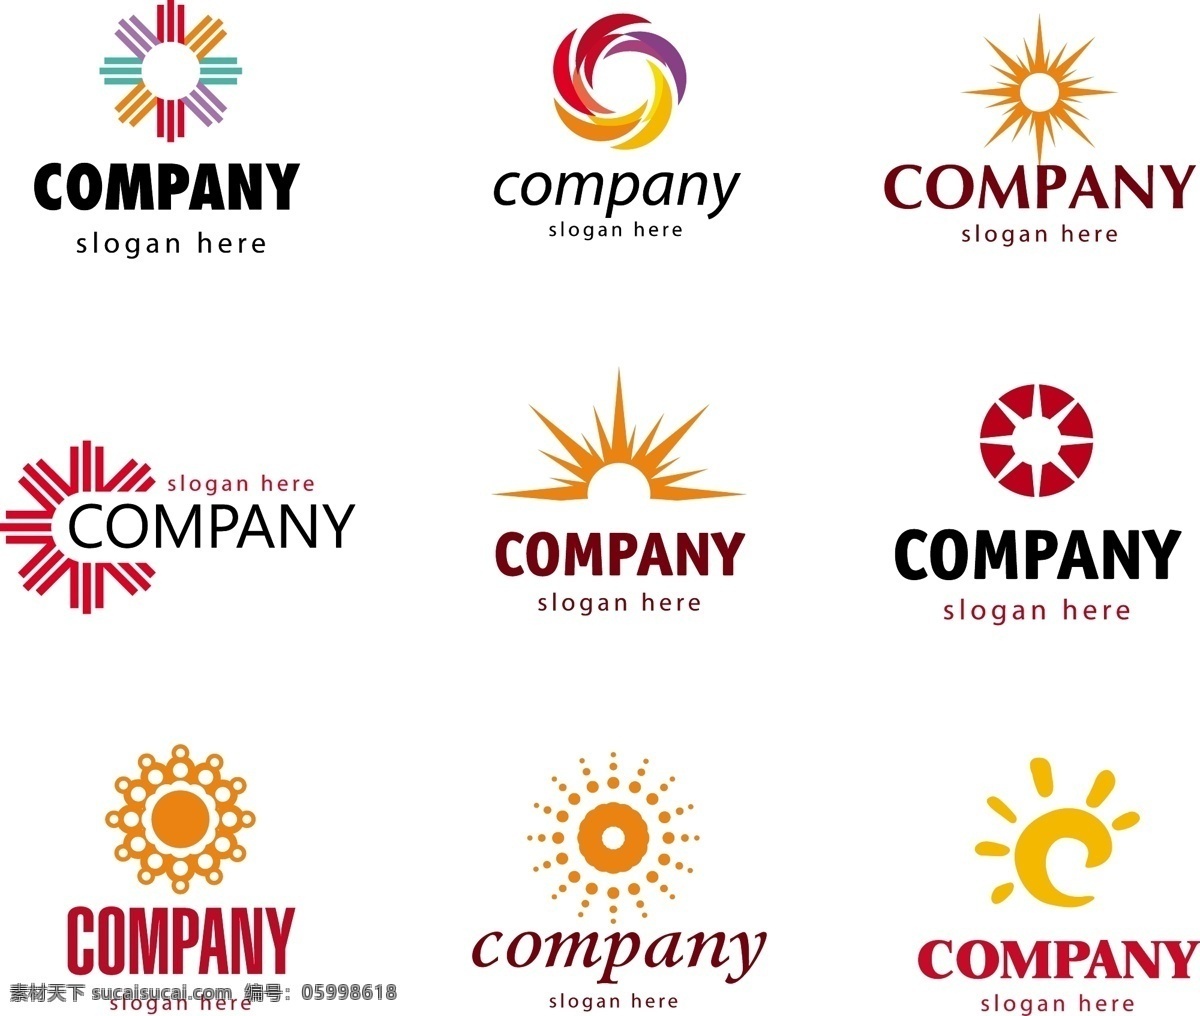 太阳 logo 公司logo 企业logo 创意 标志设计 商标设计 logo图形 标志图标 矢量素材 白色